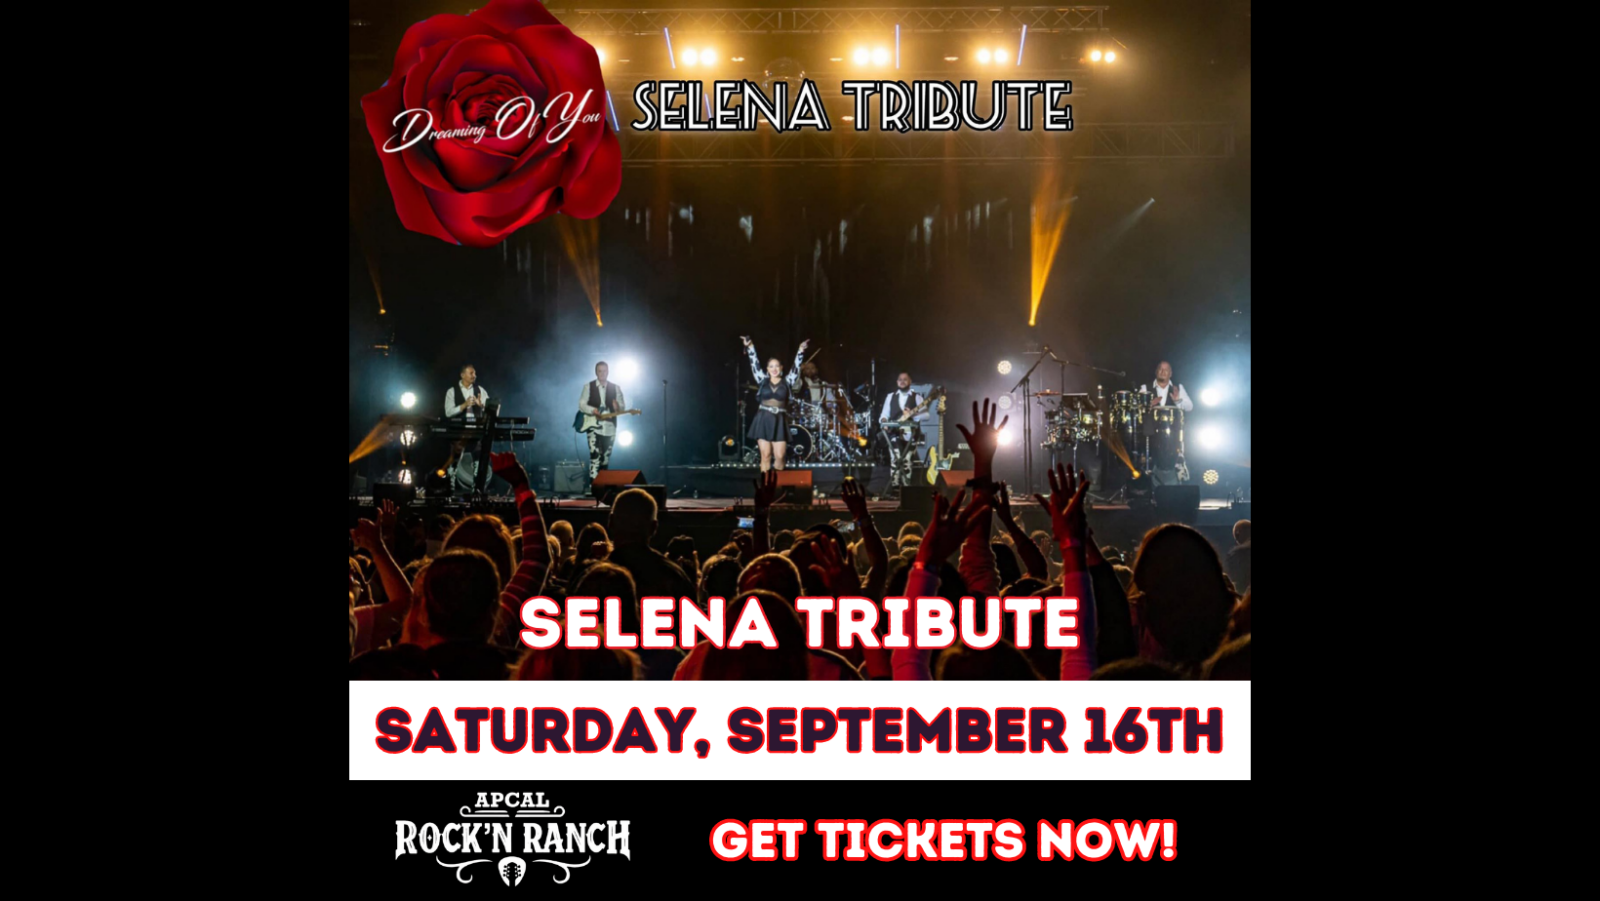 Selena Tribute - Saturday September 16th, ApCal Rock'N Ranch